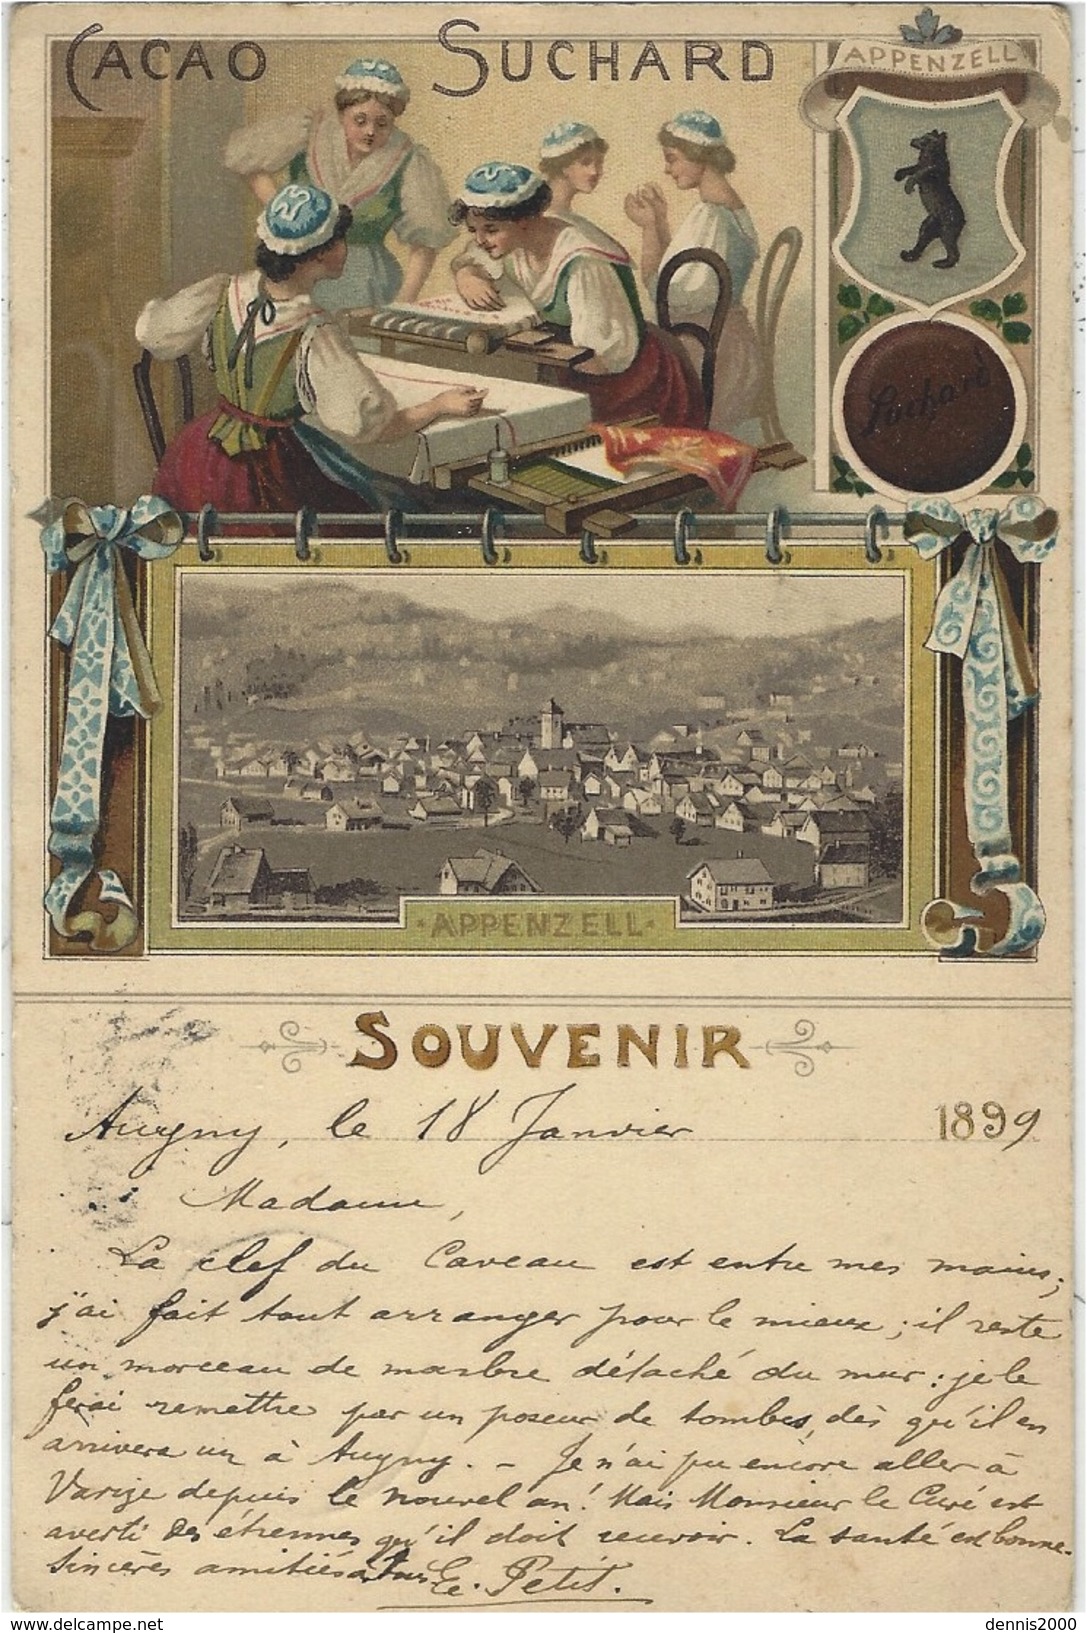 CARTE PUB Suisse - APPENZELL - CACAO SUCHARD - Souvenir - Oblit. 1899 - Appenzell